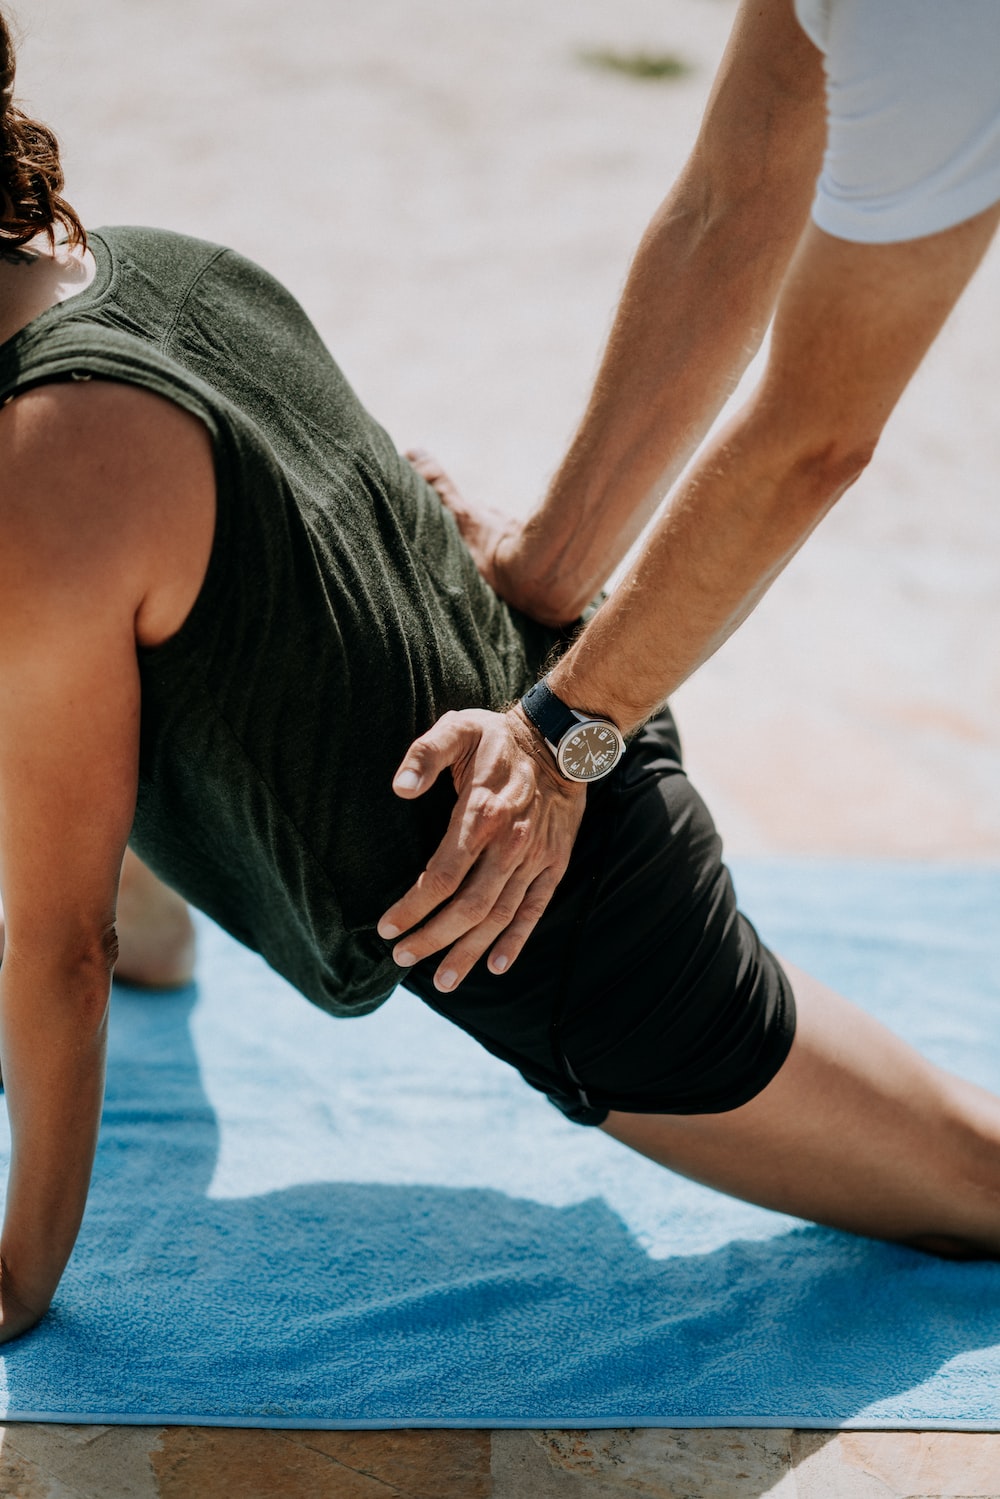 무릎 건강을 위한 운동법